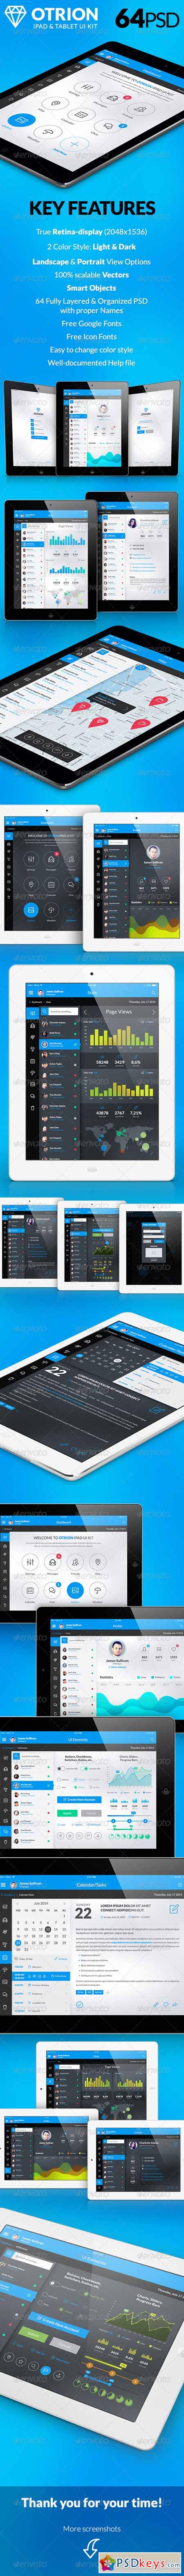 Otrion - iPad & Tablet App Design UI Kit 8438162